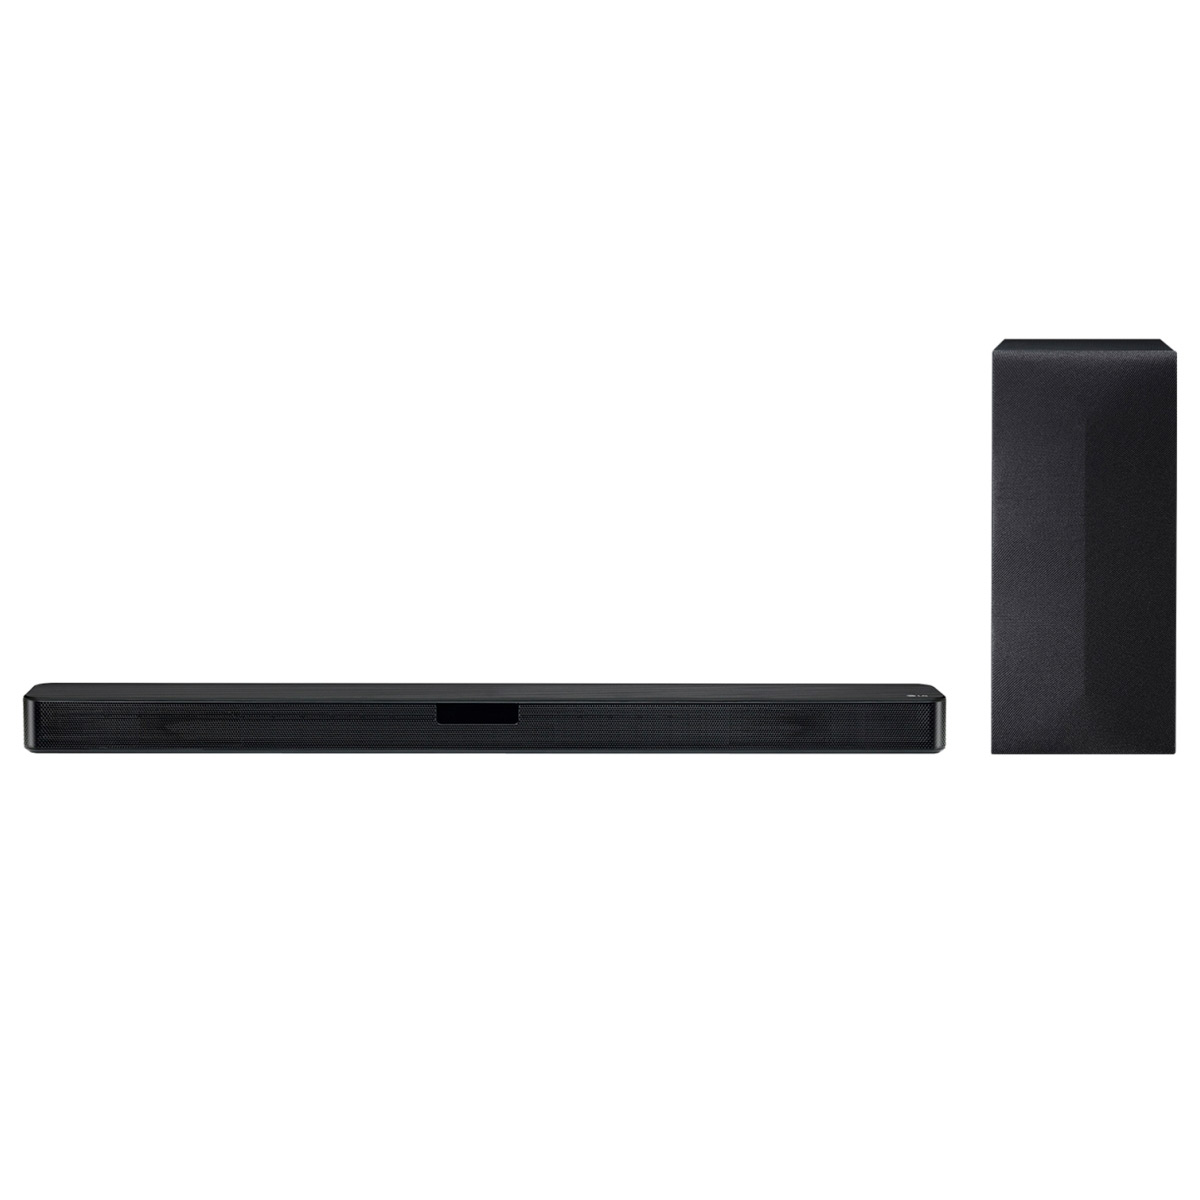 Soundbar 2.1 LG SN4 - 300W RMS - Subwoofer sem fio - Conexão HDMI, Óptico e Bluetooth - DTS Virtual: X - AI Sound Pro